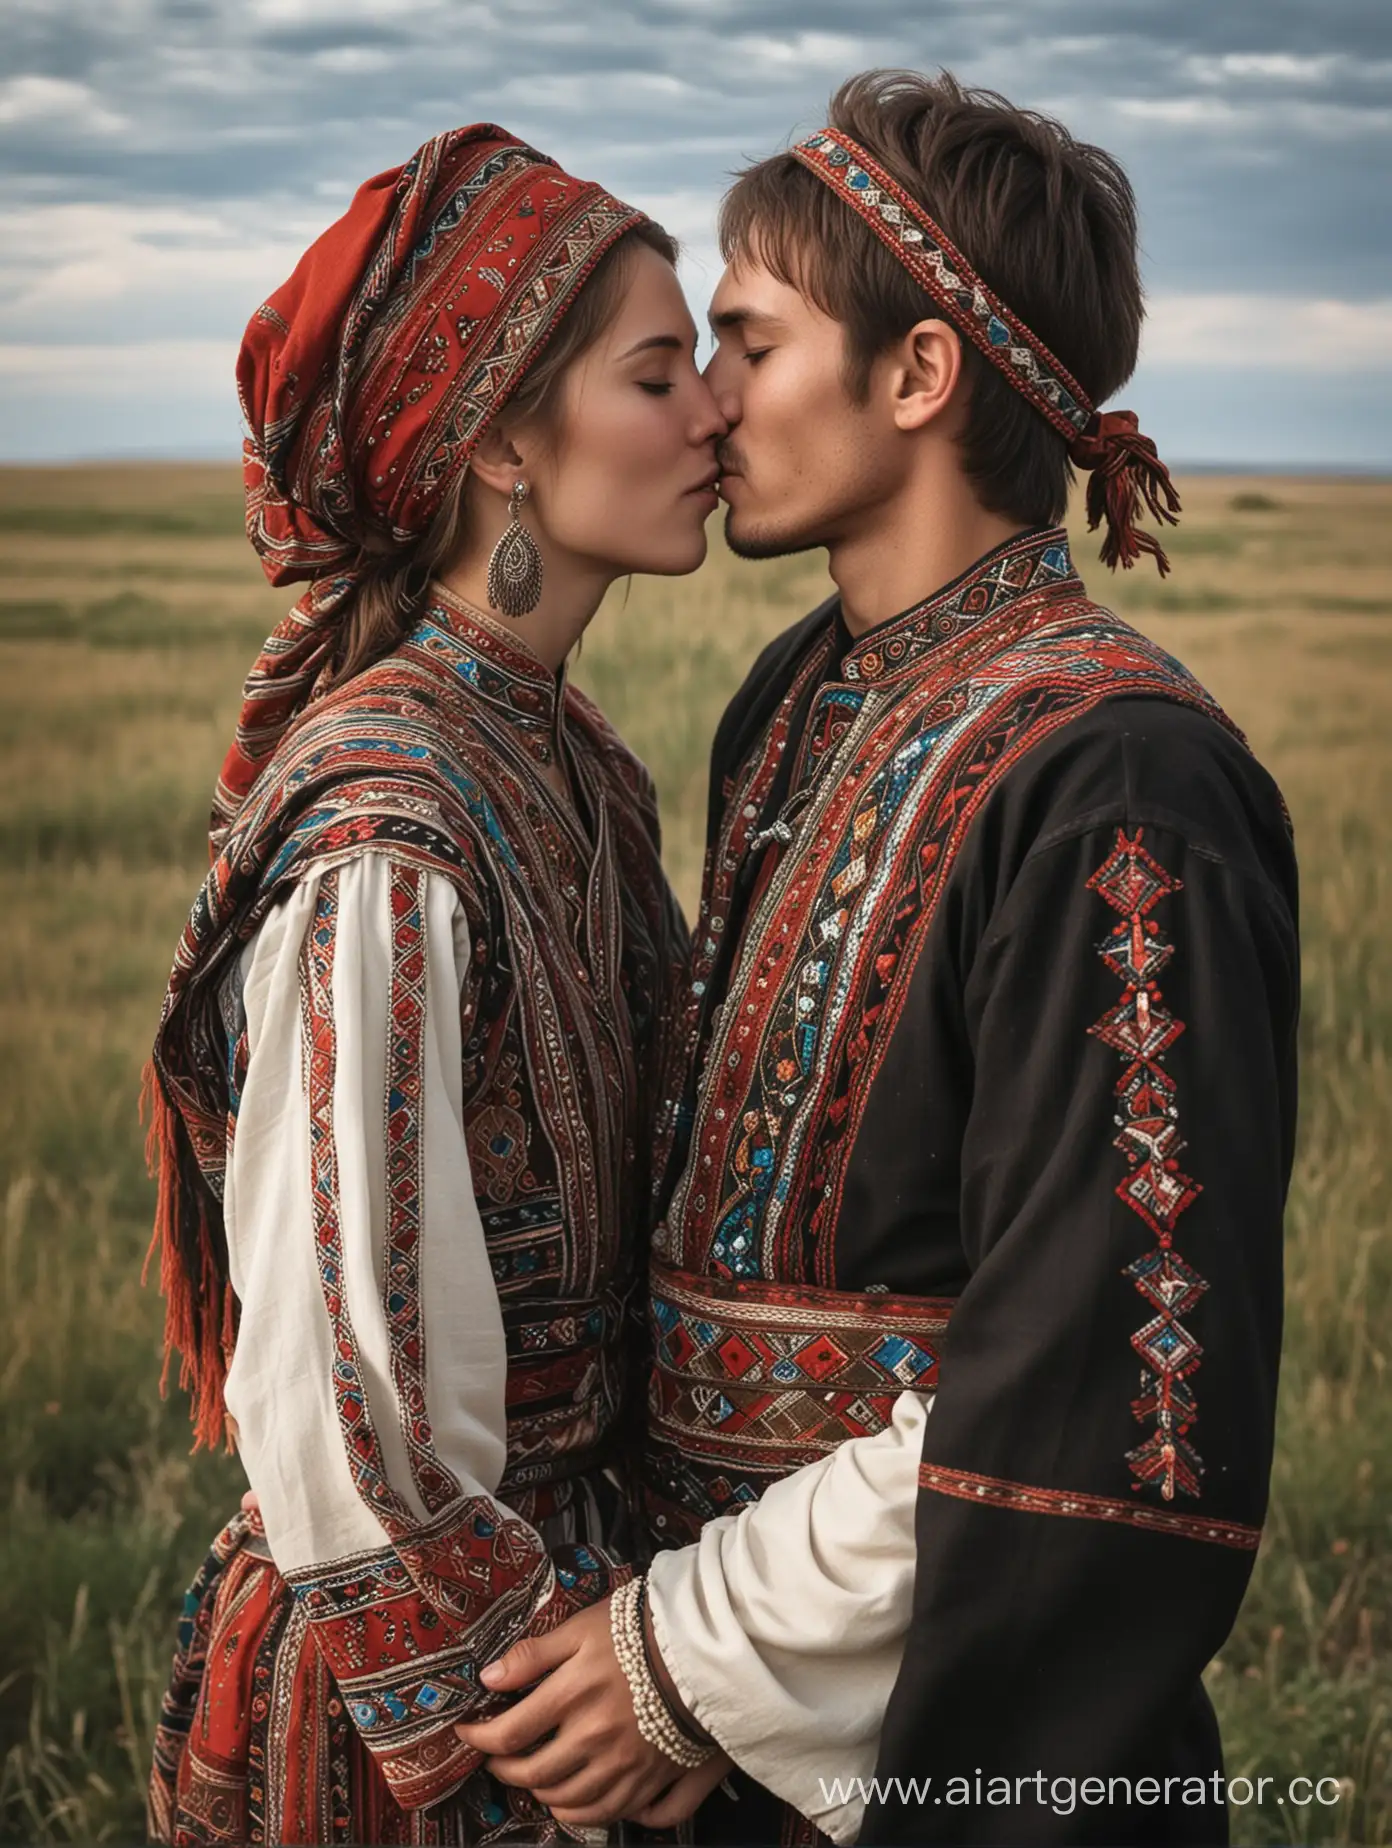 Молодые Мужчина чуваш и женщина мордвинка, одетые в одежду кочевников, обнимаются и целуются в степи. 